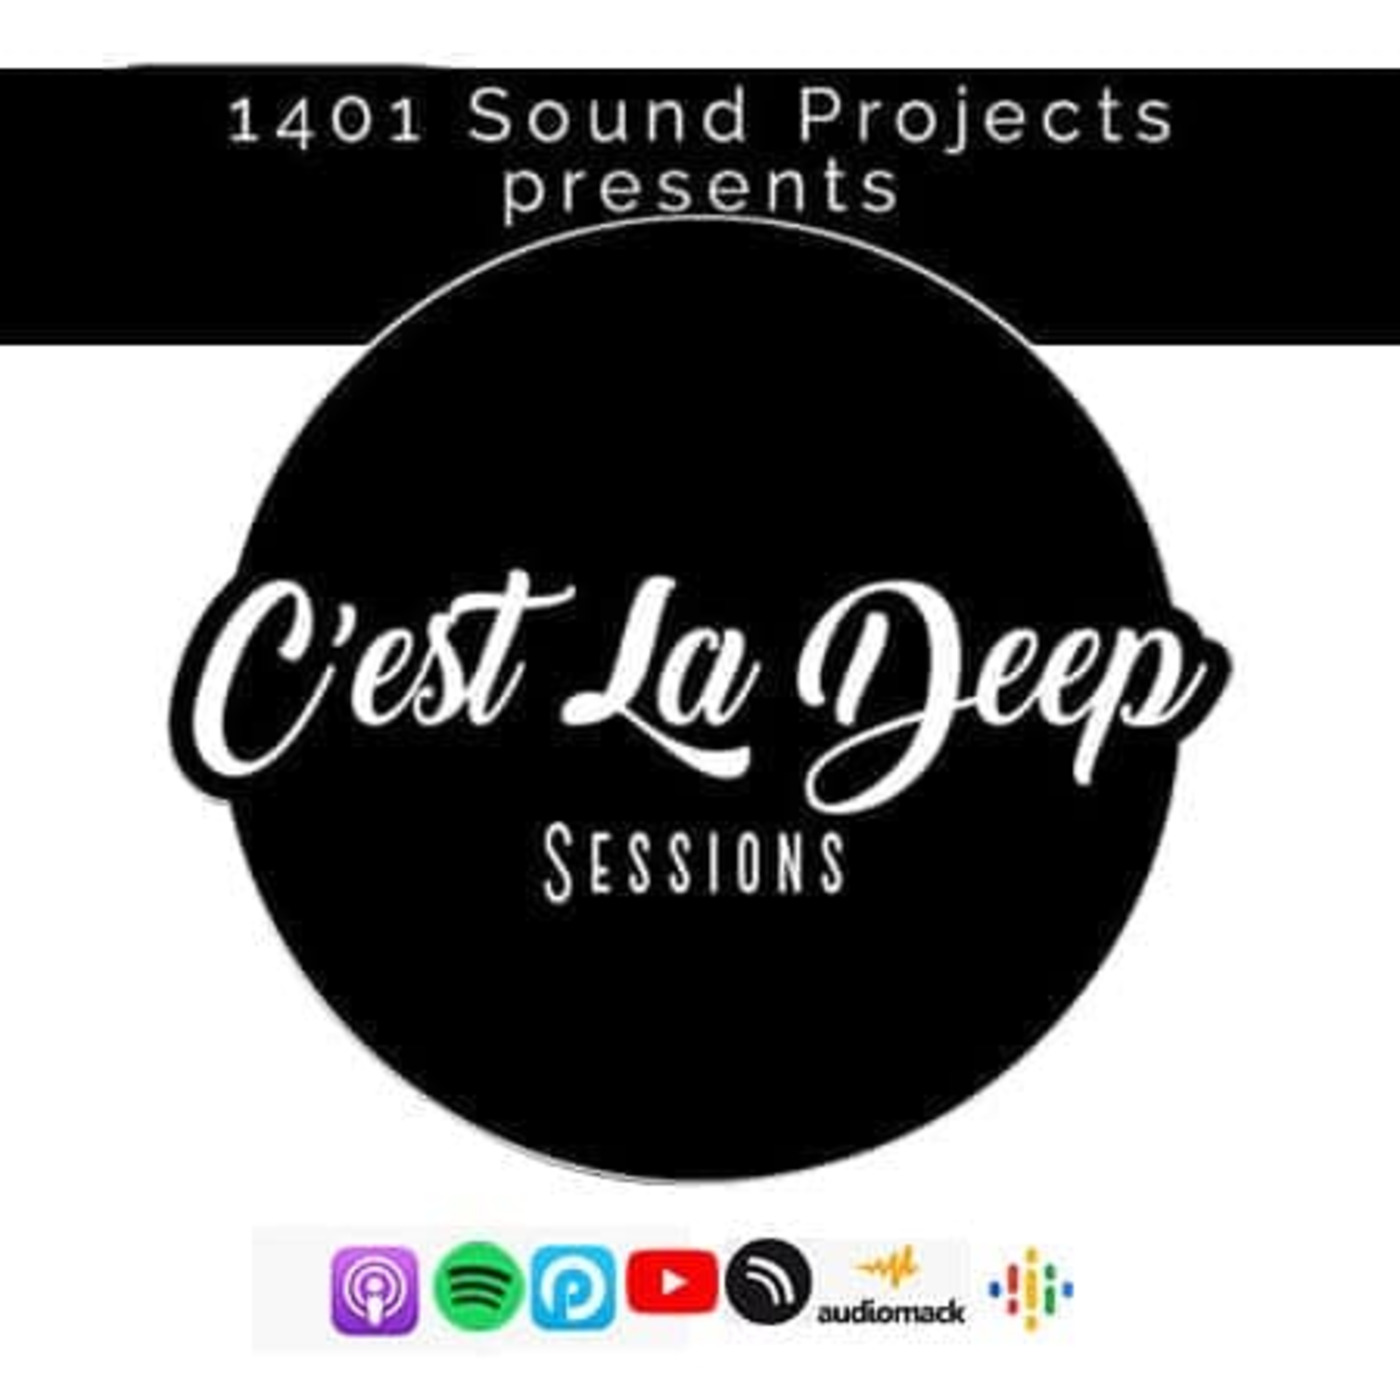 Episode 19: 1401 Sound Projects Presents C’est La Deep Sessions Vol.12 Mixed By Mphoza(Audio-J)